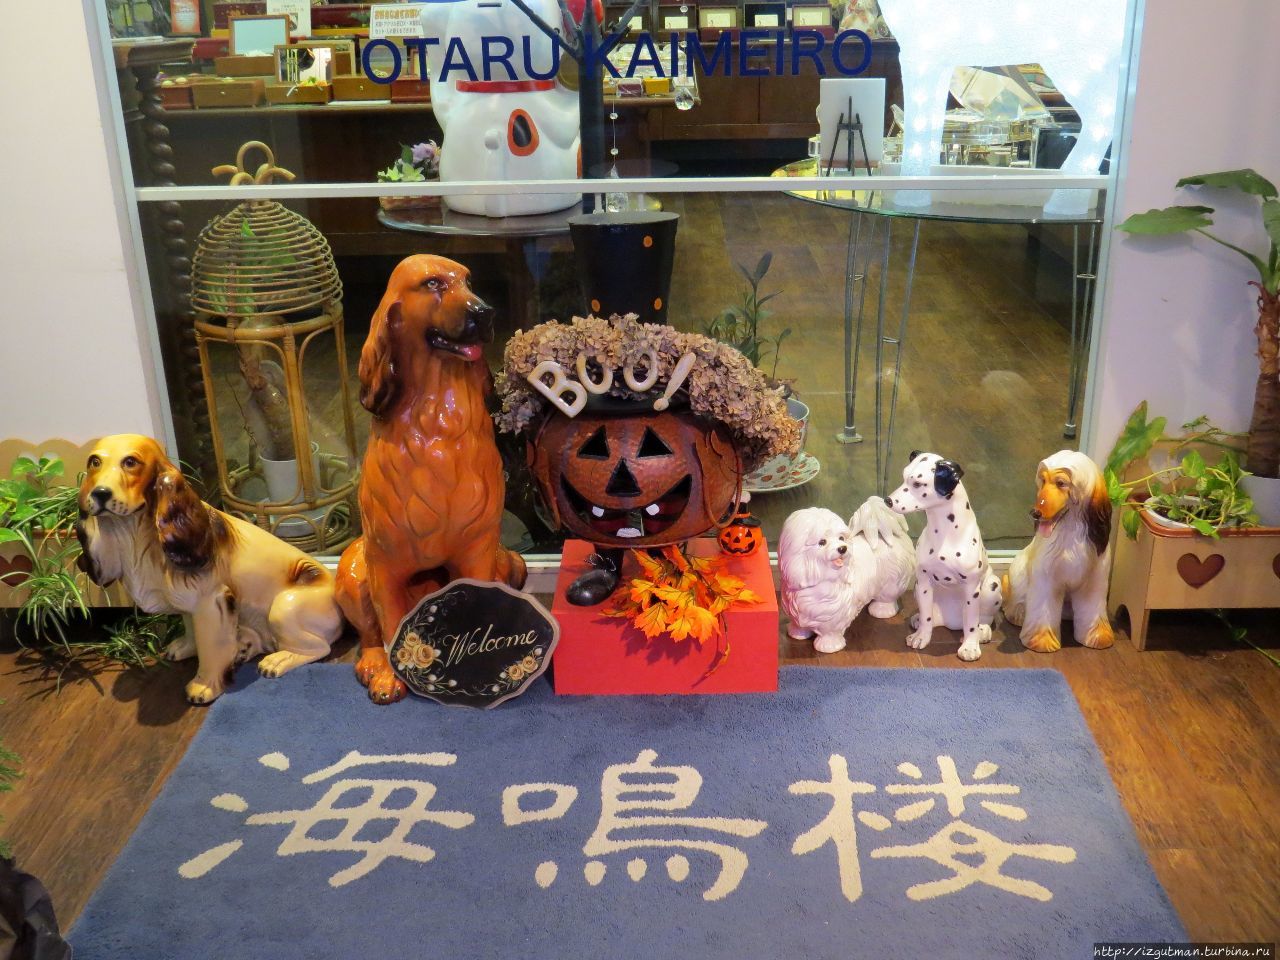 Магазин — настоящее собачье царство Отару, Япония